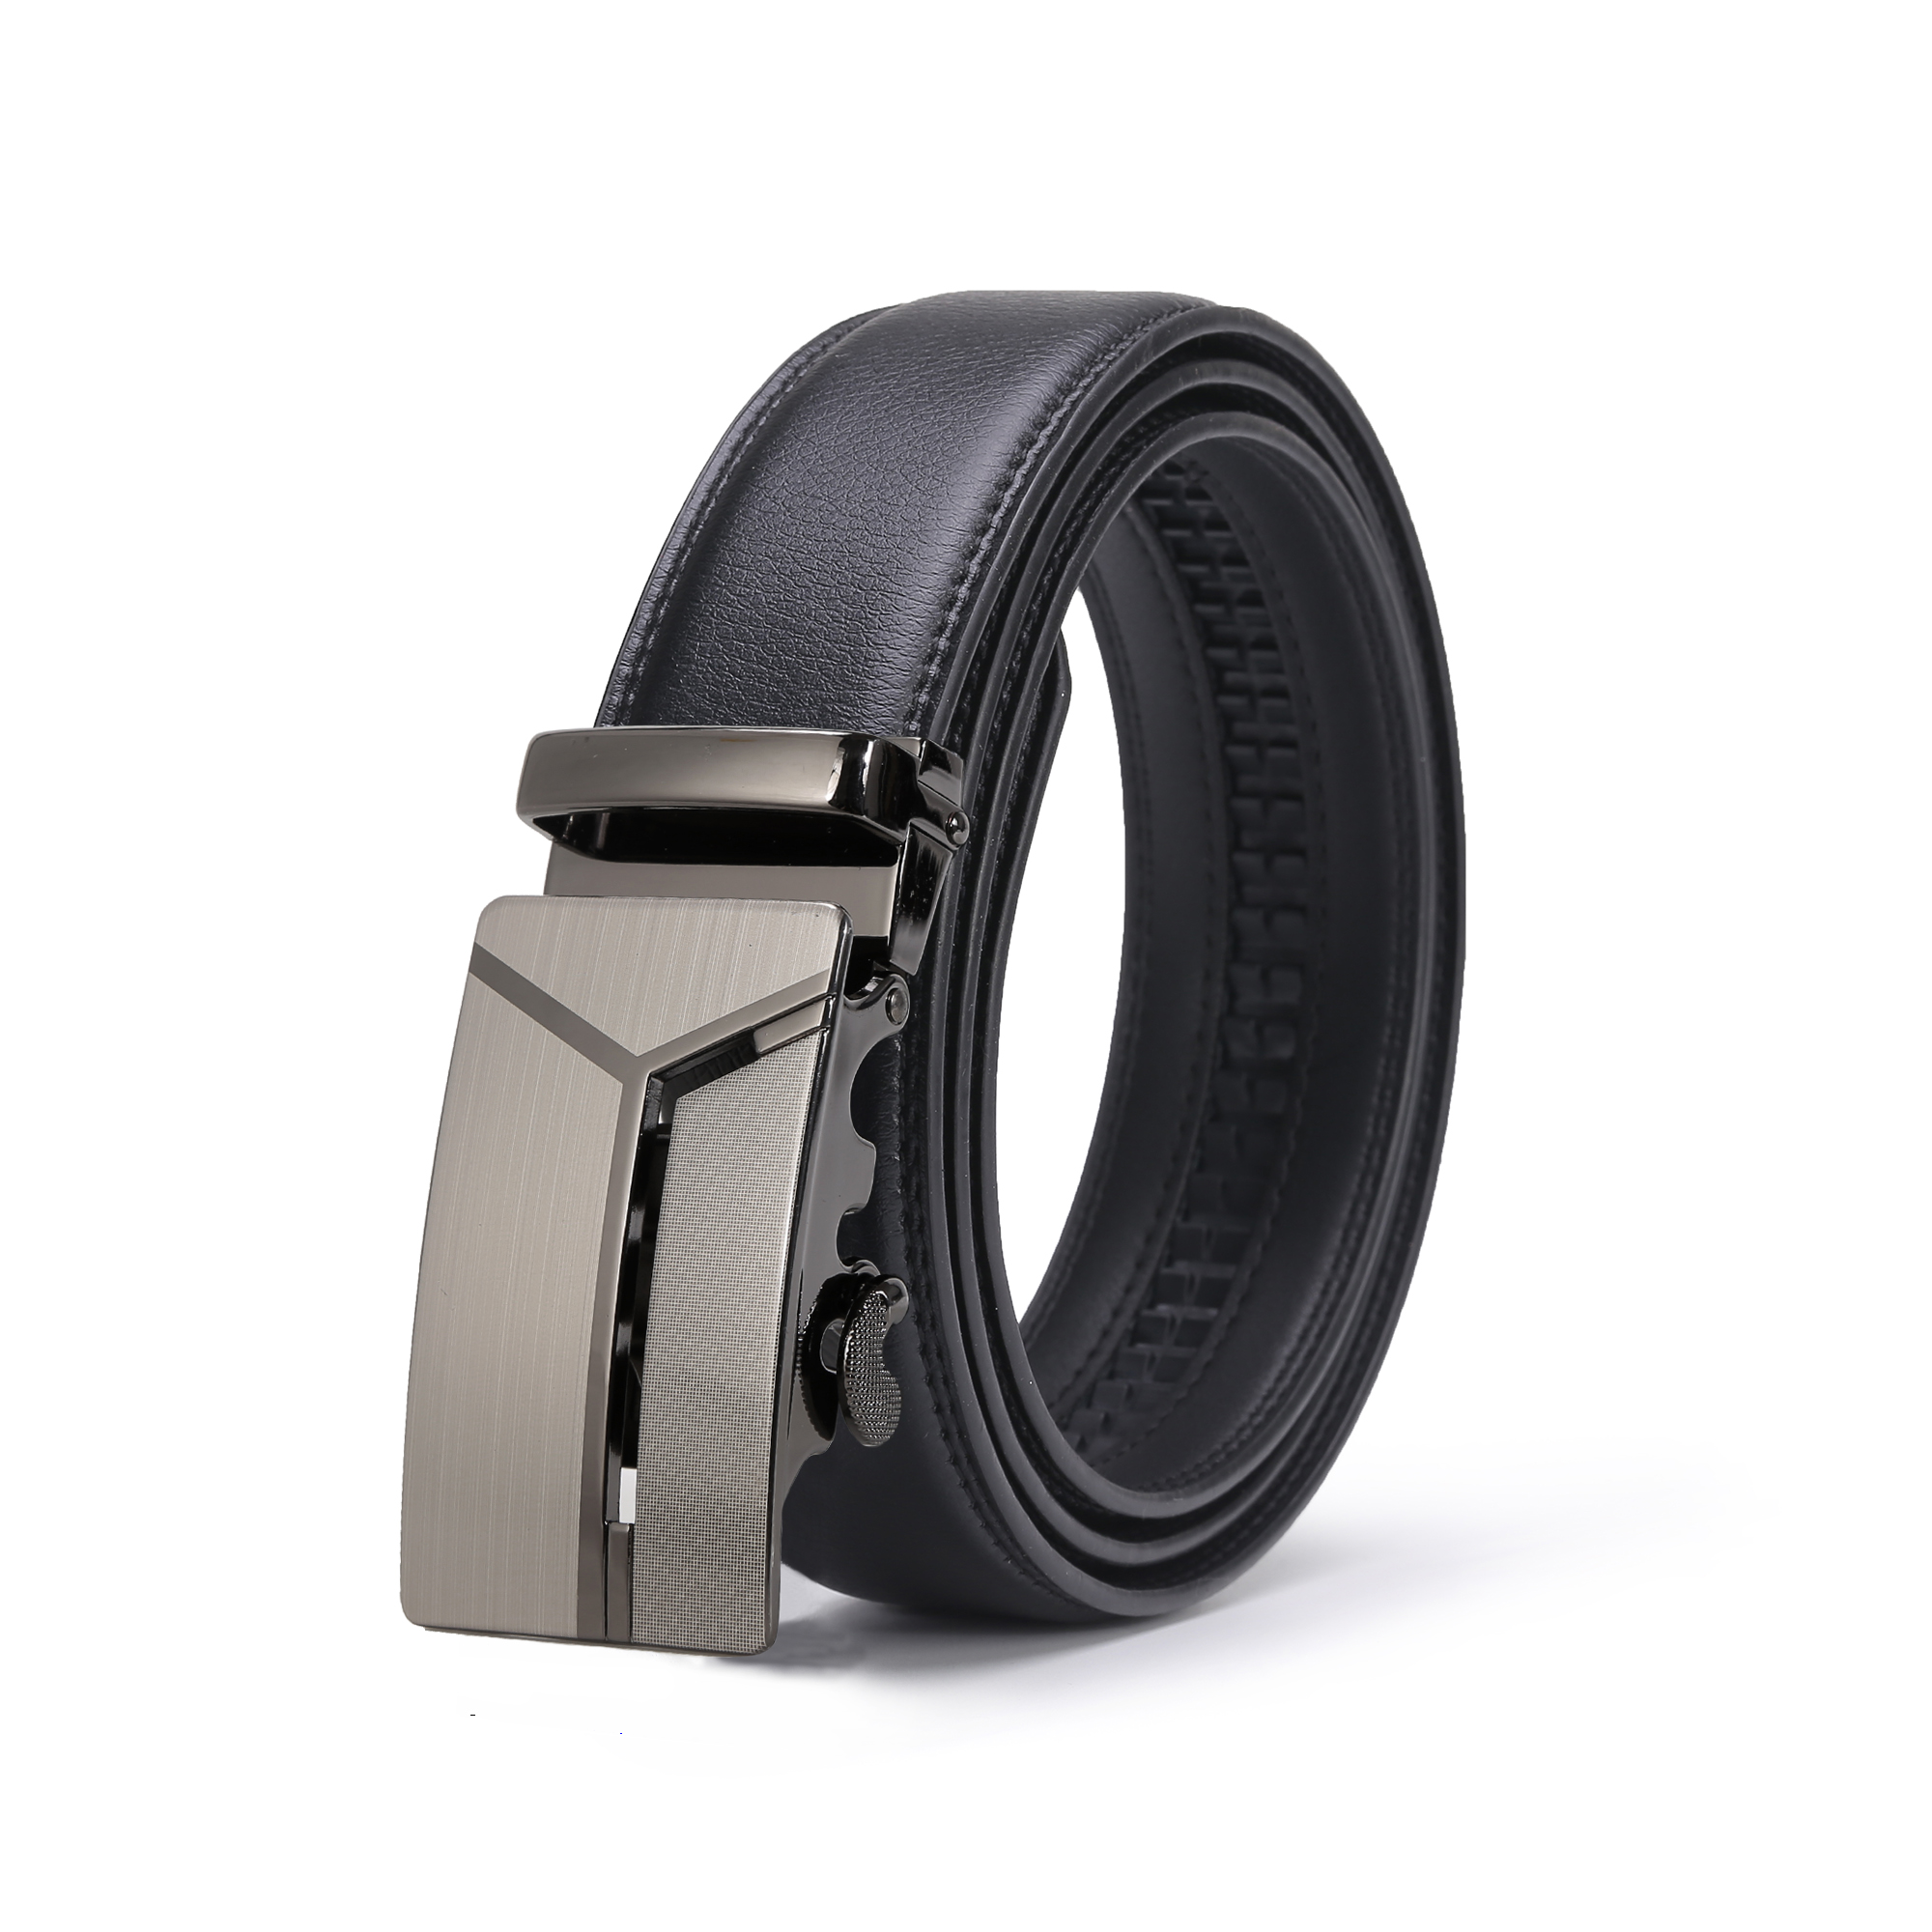 Cinturones de cuero para hombres Ratchet para hombres Cinturones ajustables  con hebilla deslizante de clic para vestir, elección ideal para regalos